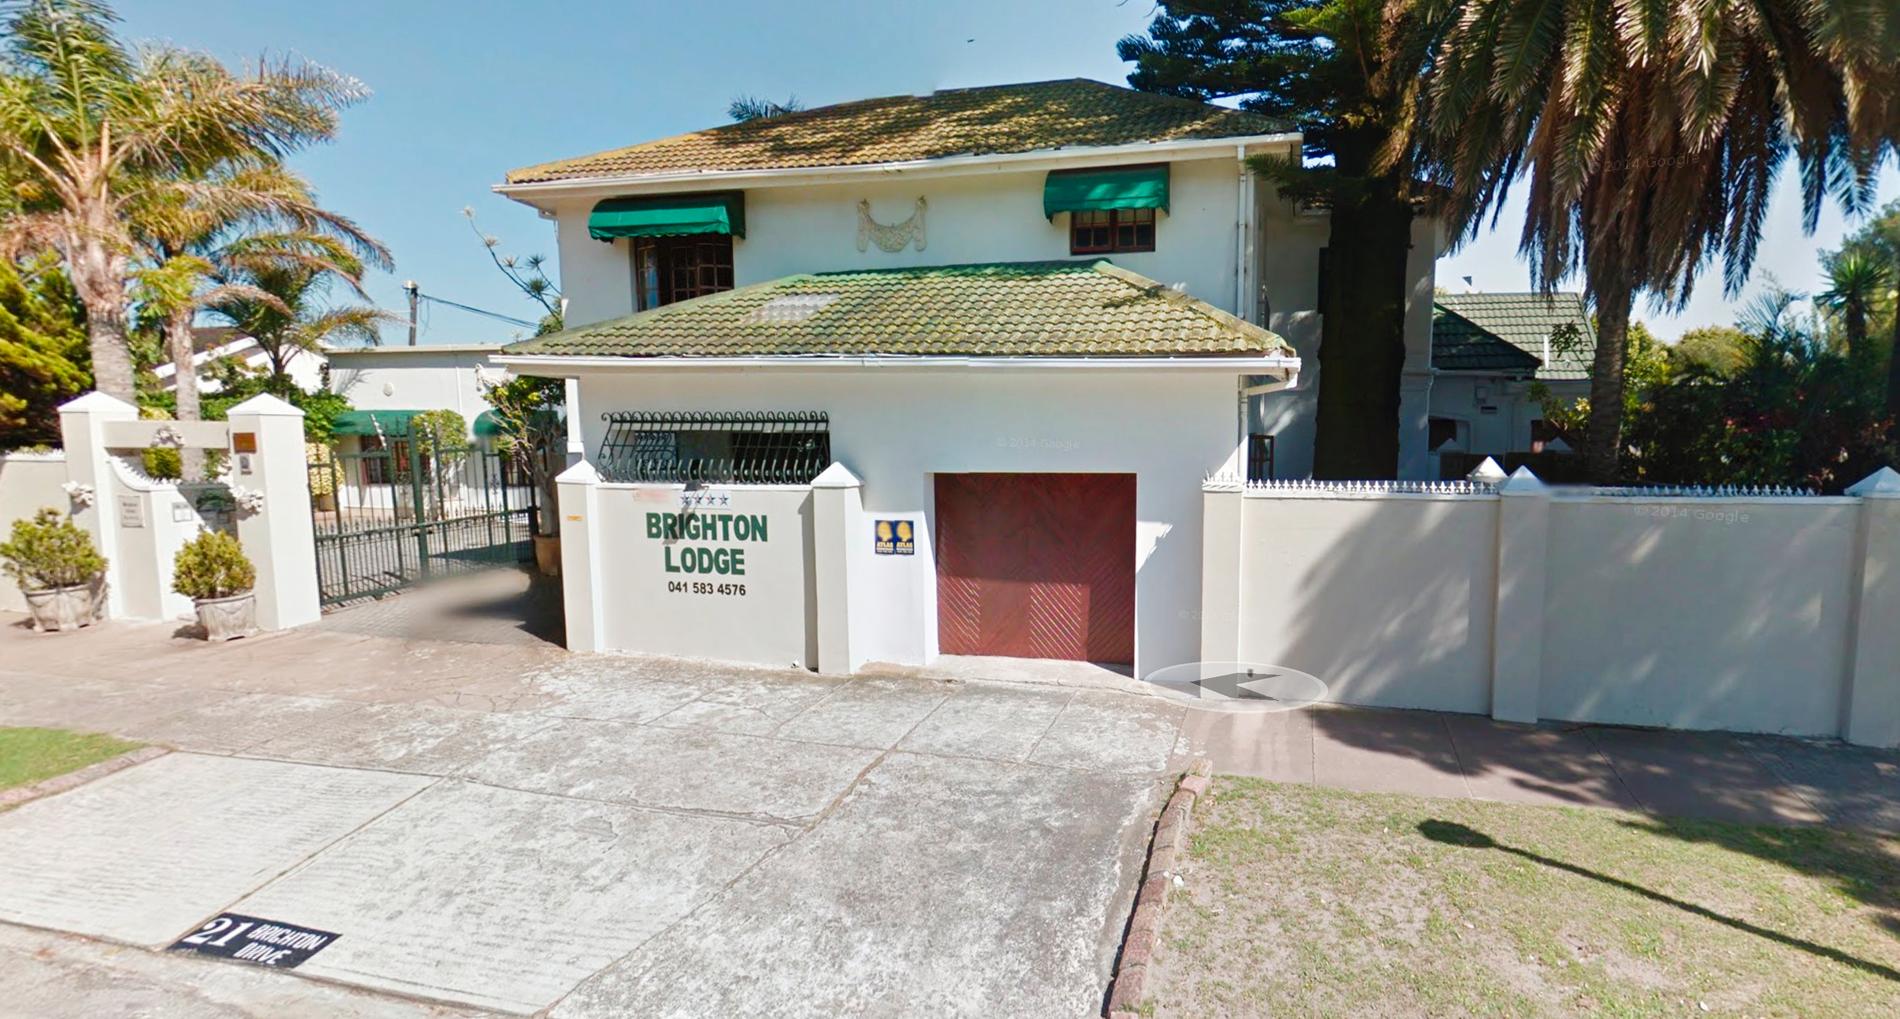 Brighton Lodge, Port Elizabeth i Sydafrika.